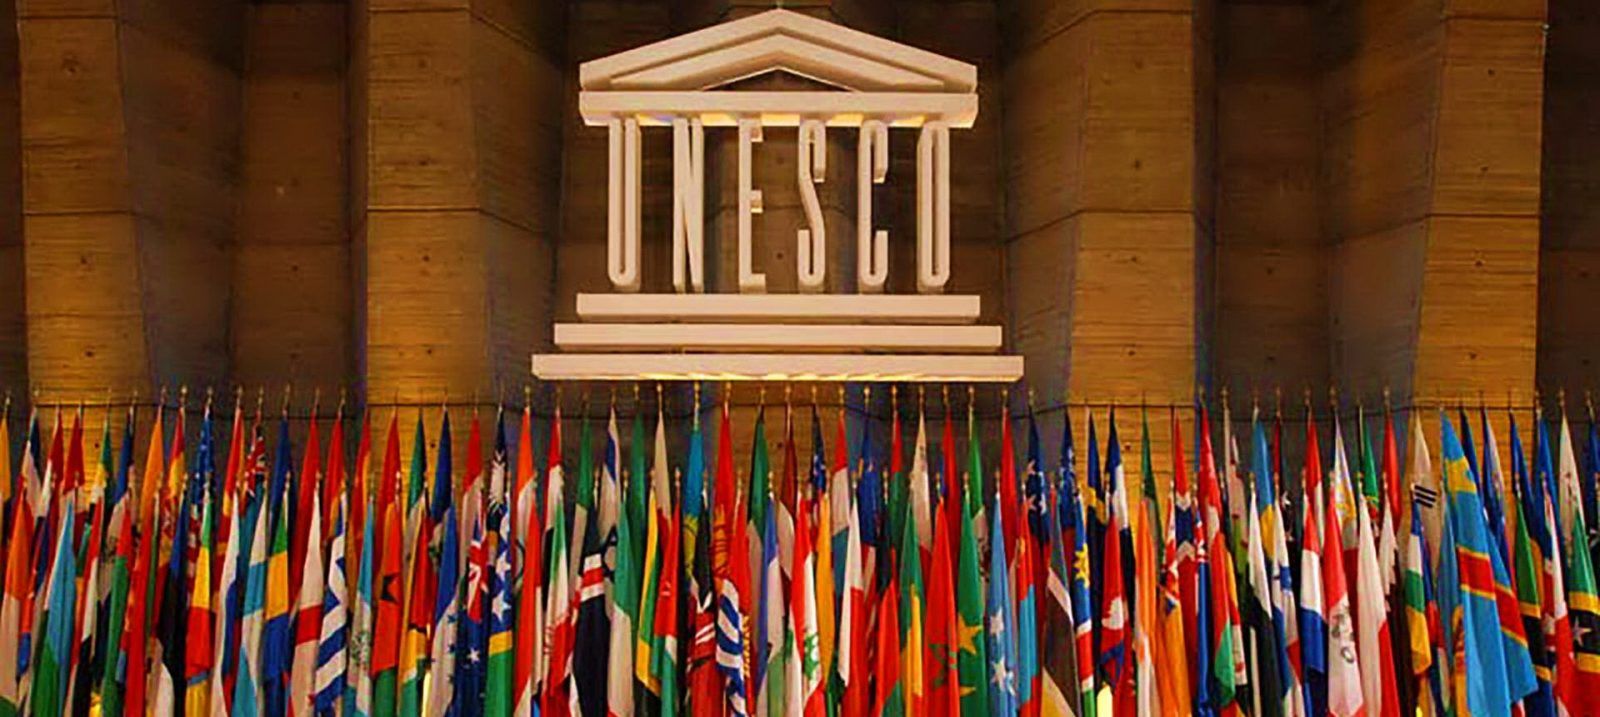 Штаб-квартира ЮНЕСКО — Организации ООН по вопросам образования, науки и культуры